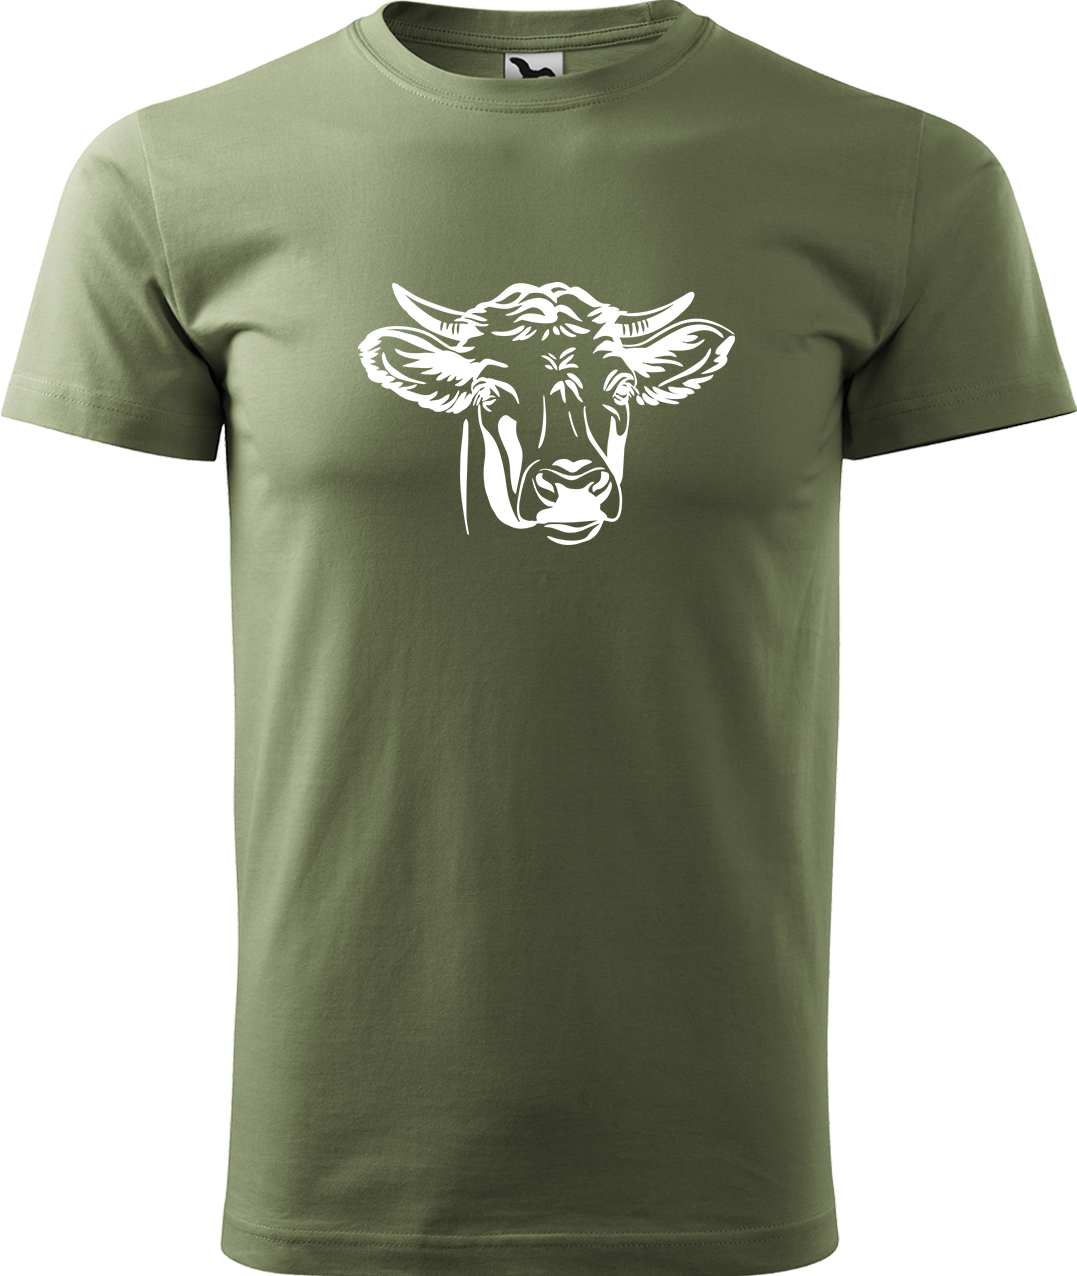 Pánské tričko s krávou - Hlava krávy Velikost: M, Barva: Světlá khaki (28), Střih: pánský